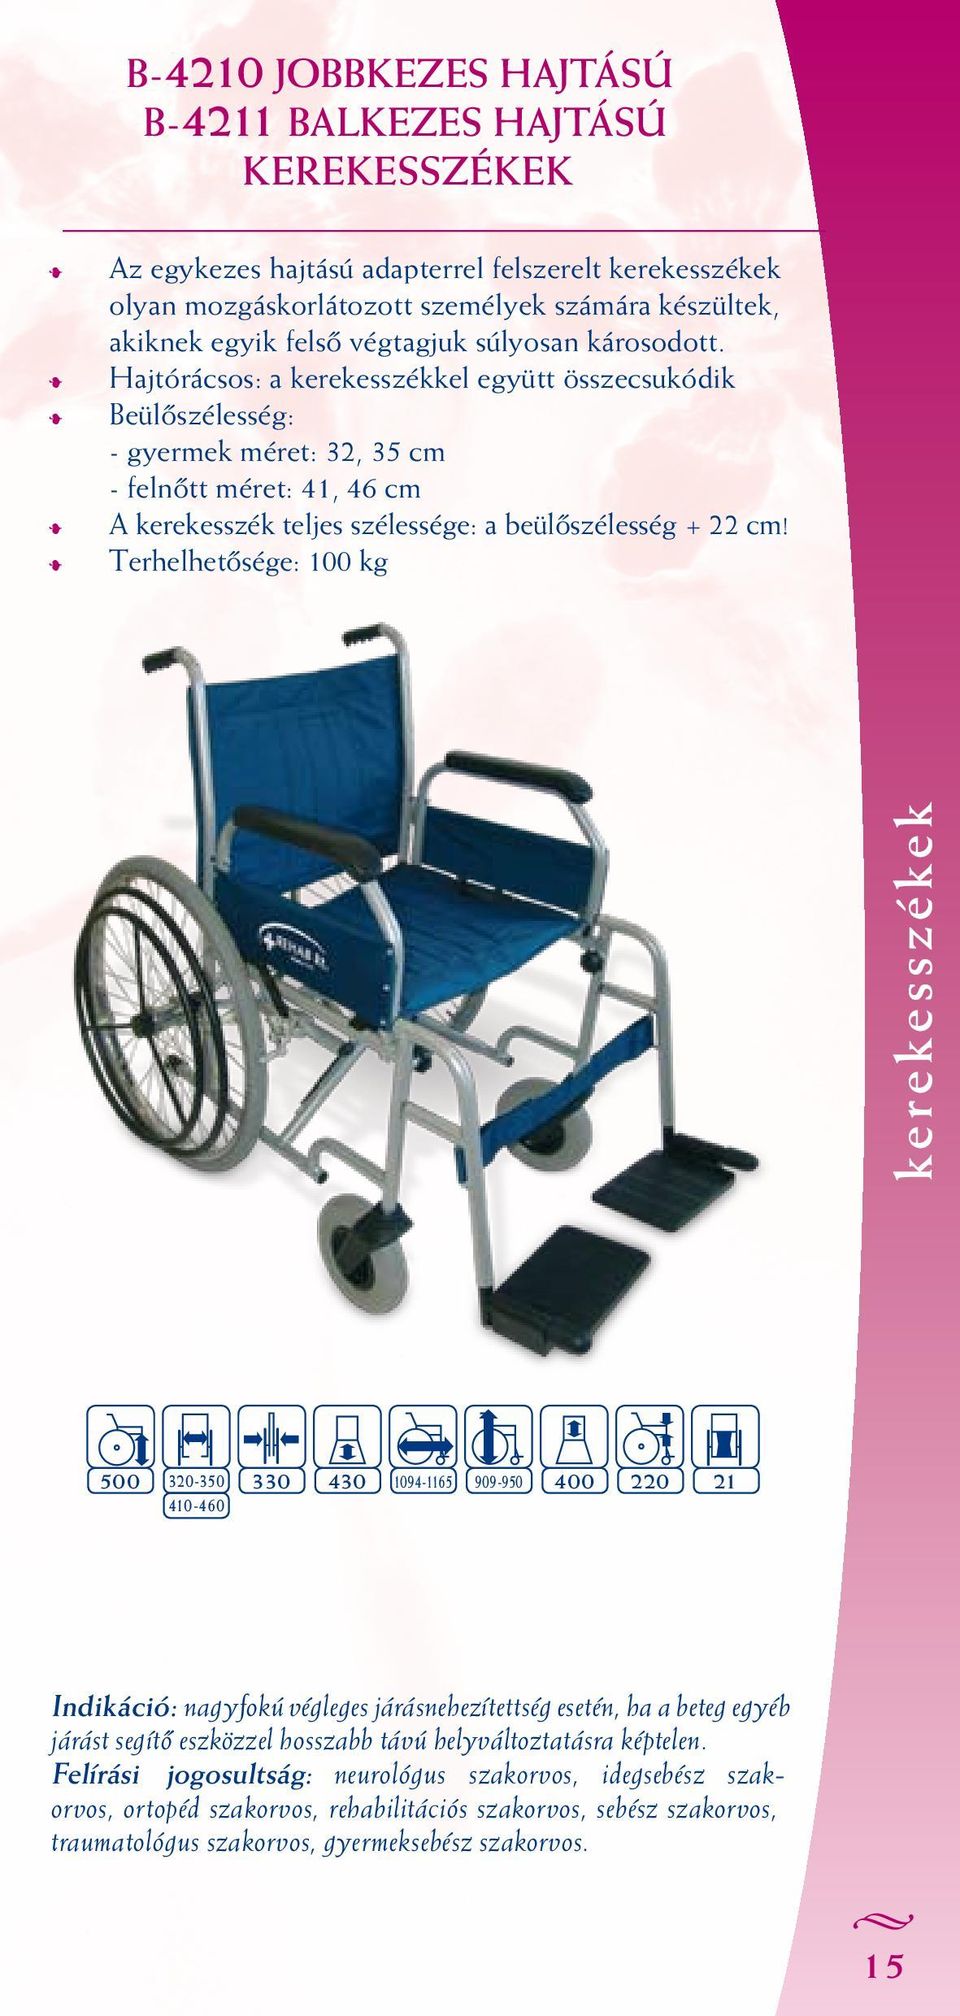 Terhelhetősége: 100 kg 500 320-350 330 410-460 430 1094-1165 909-950 400 220 21 Indikáció: nagyfokú végleges járásnehezítettség esetén, ha a beteg egyéb járást segítő eszközzel hosszabb távú